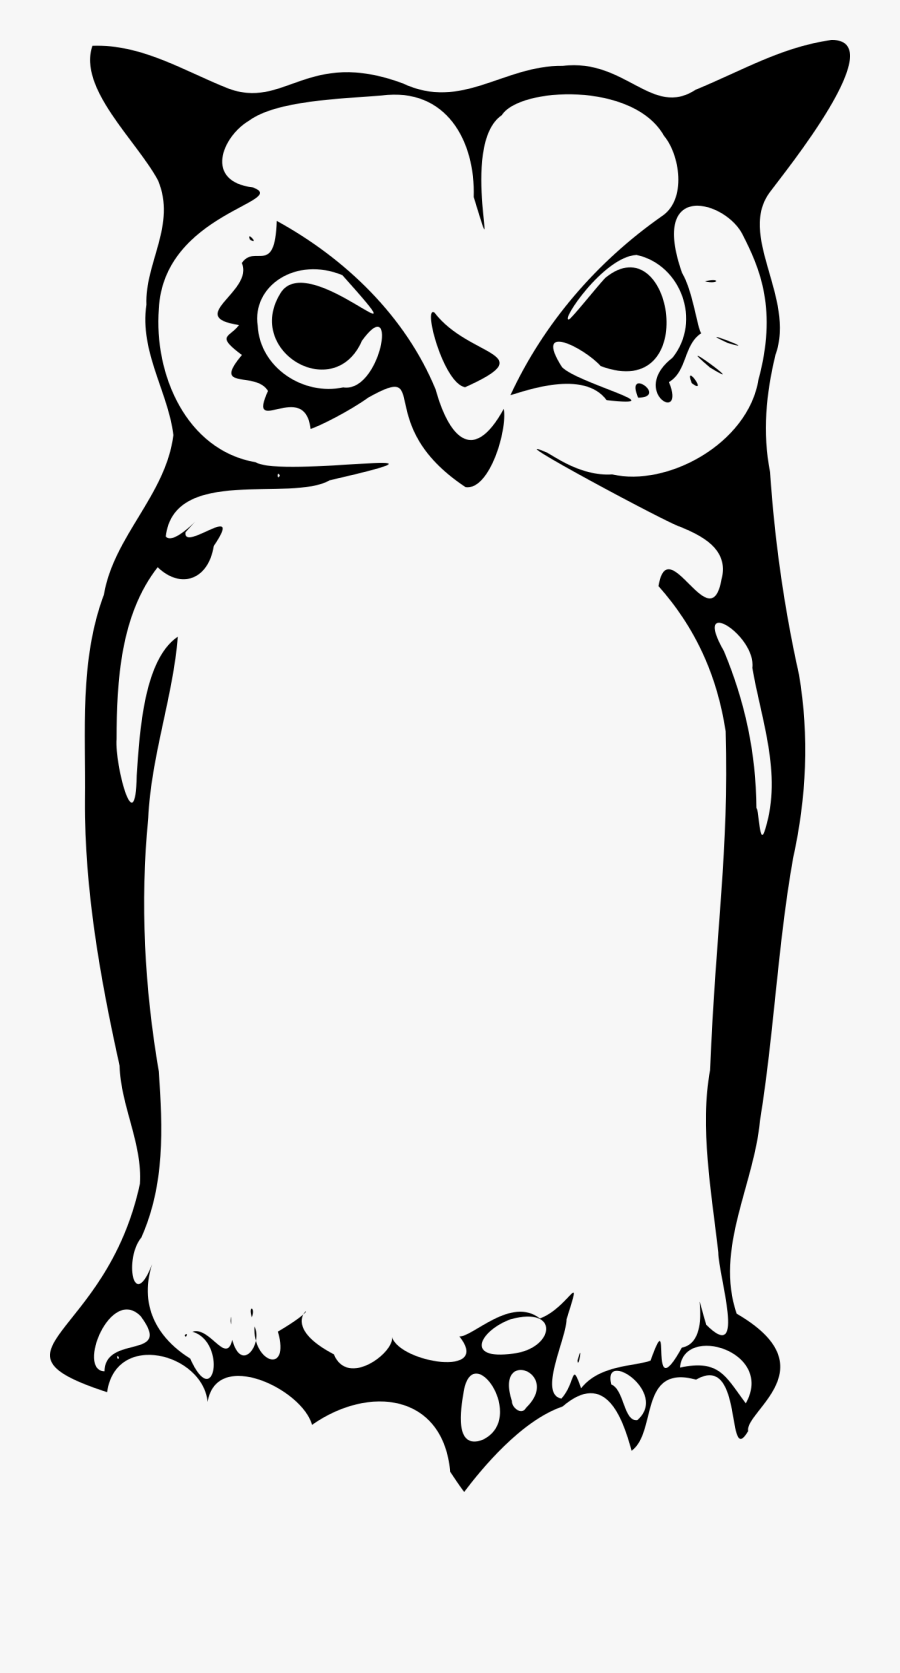 Snowy Owl Great Horned Owl Clip Art - Gambar Burung Hantu Siluet, Transparent Clipart